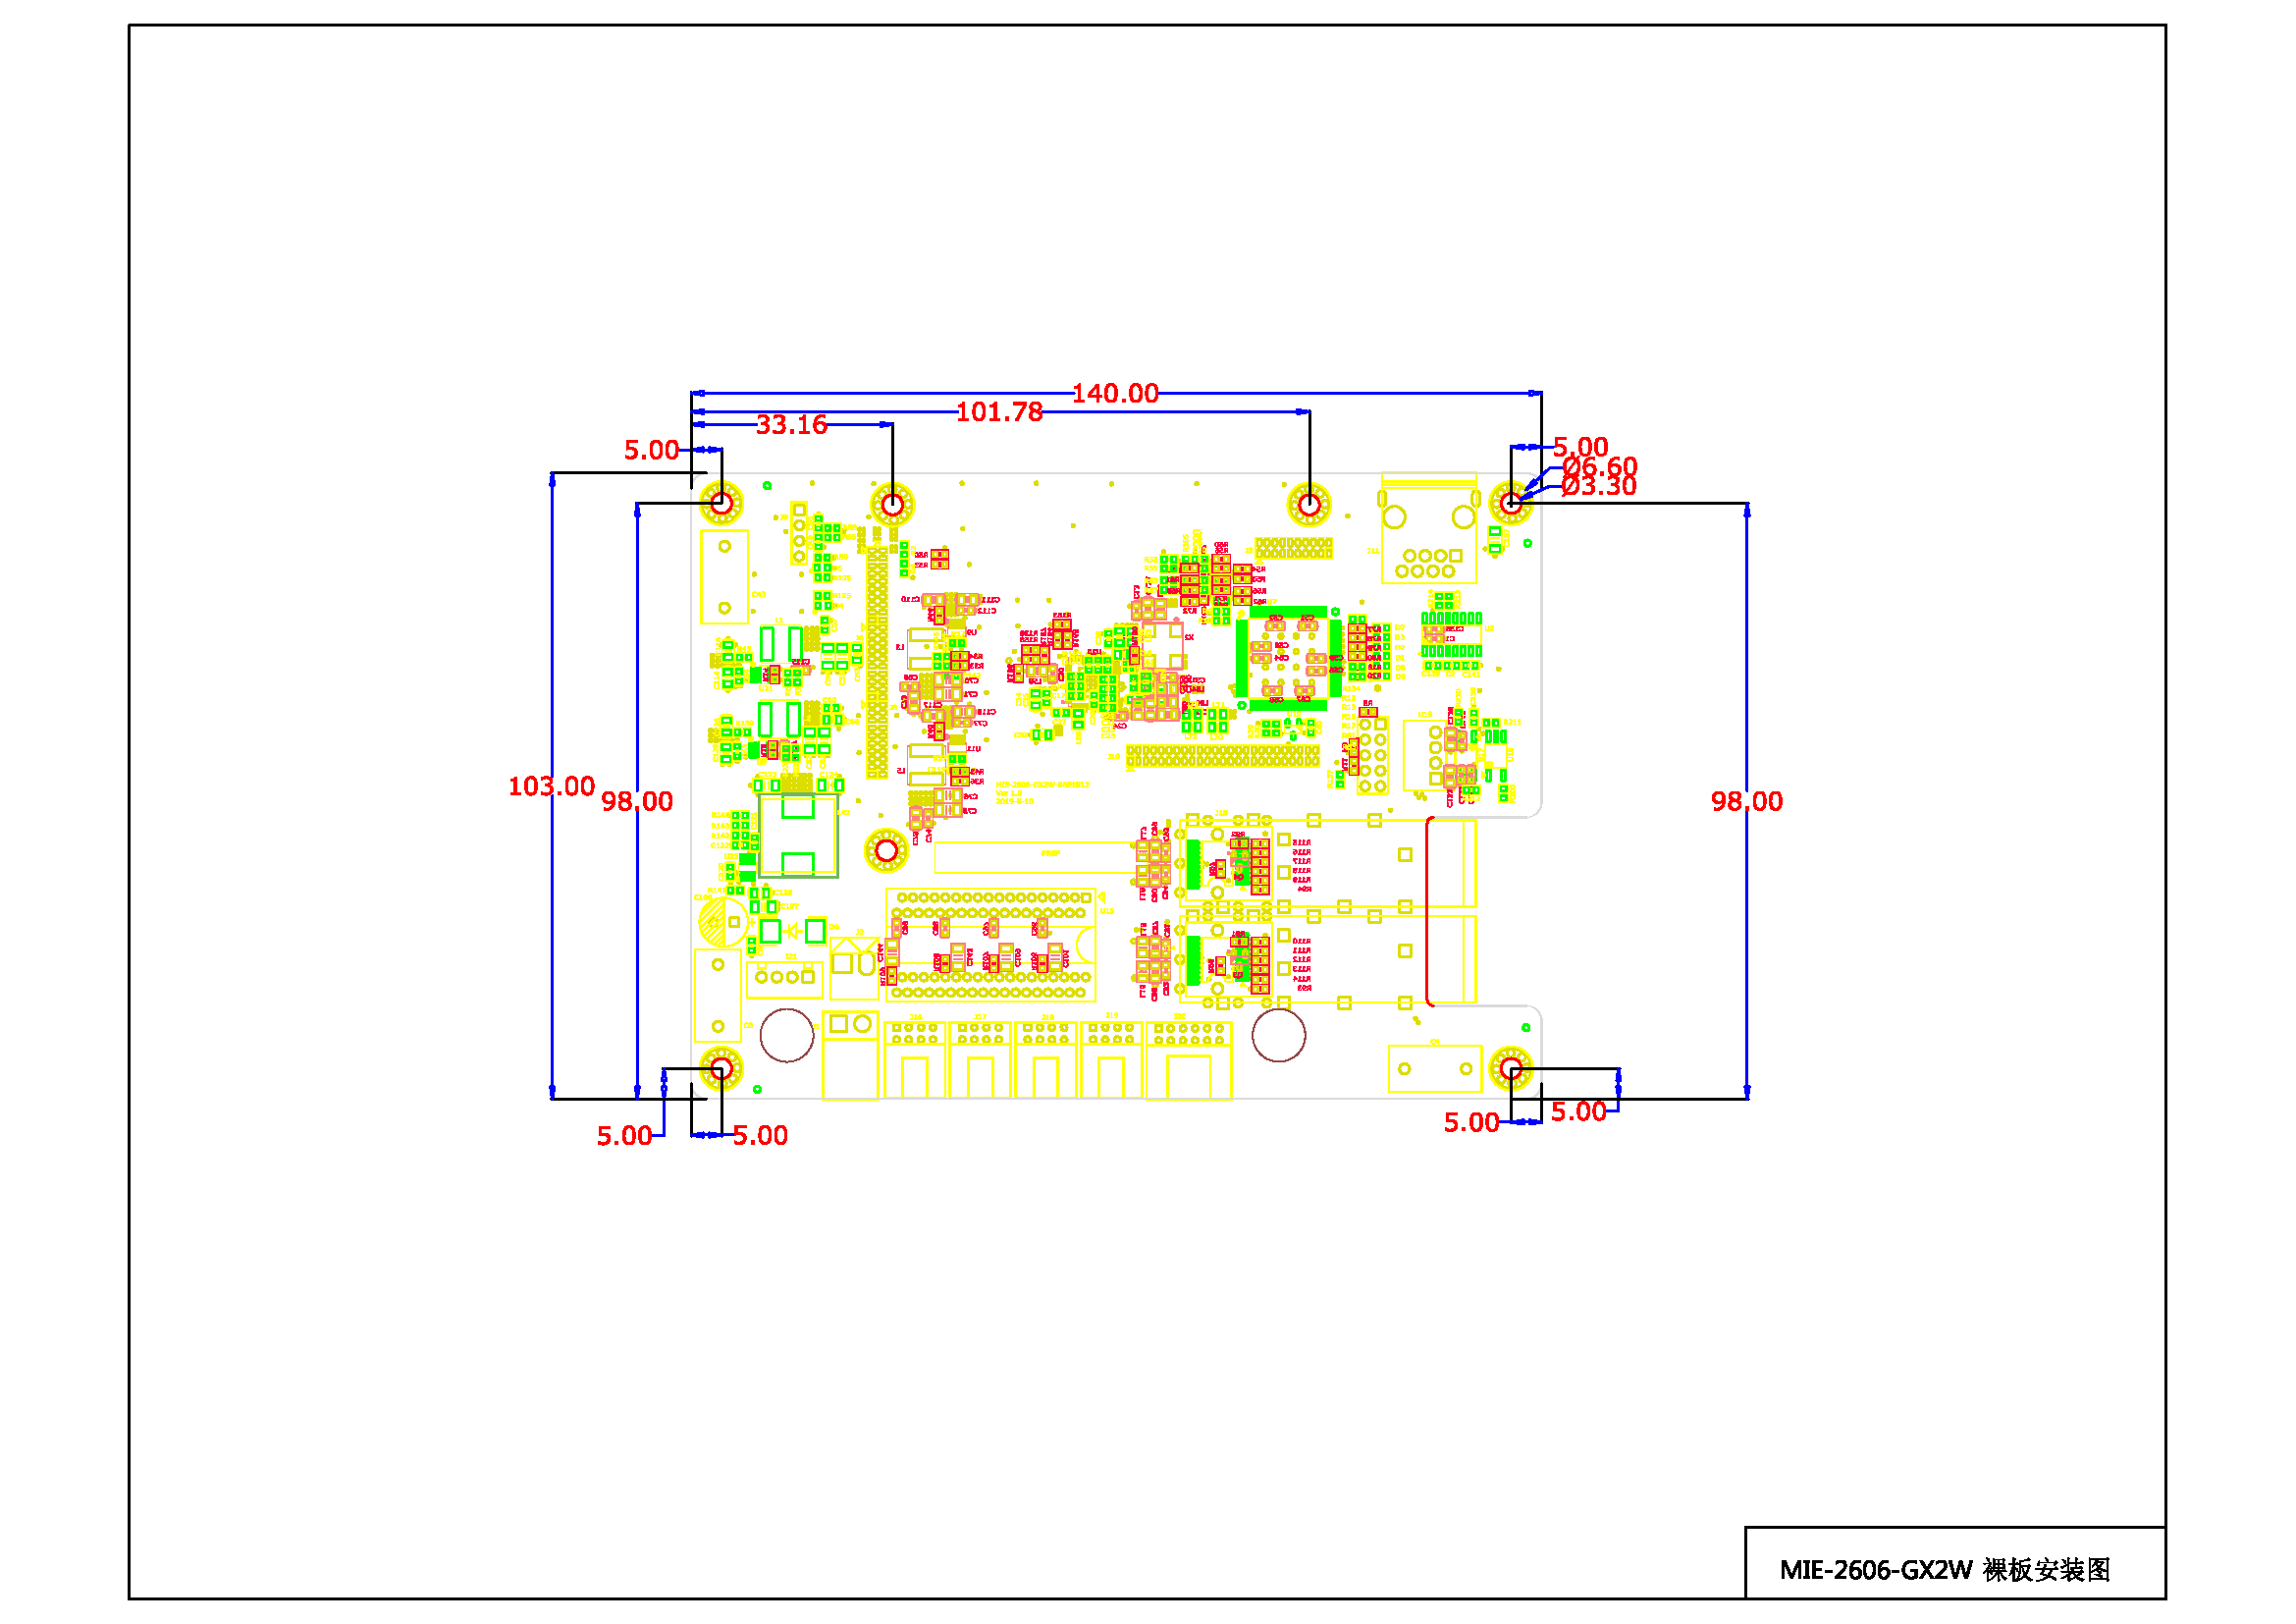 MIE-2606-GX2W裸板安装图 Model (1).png